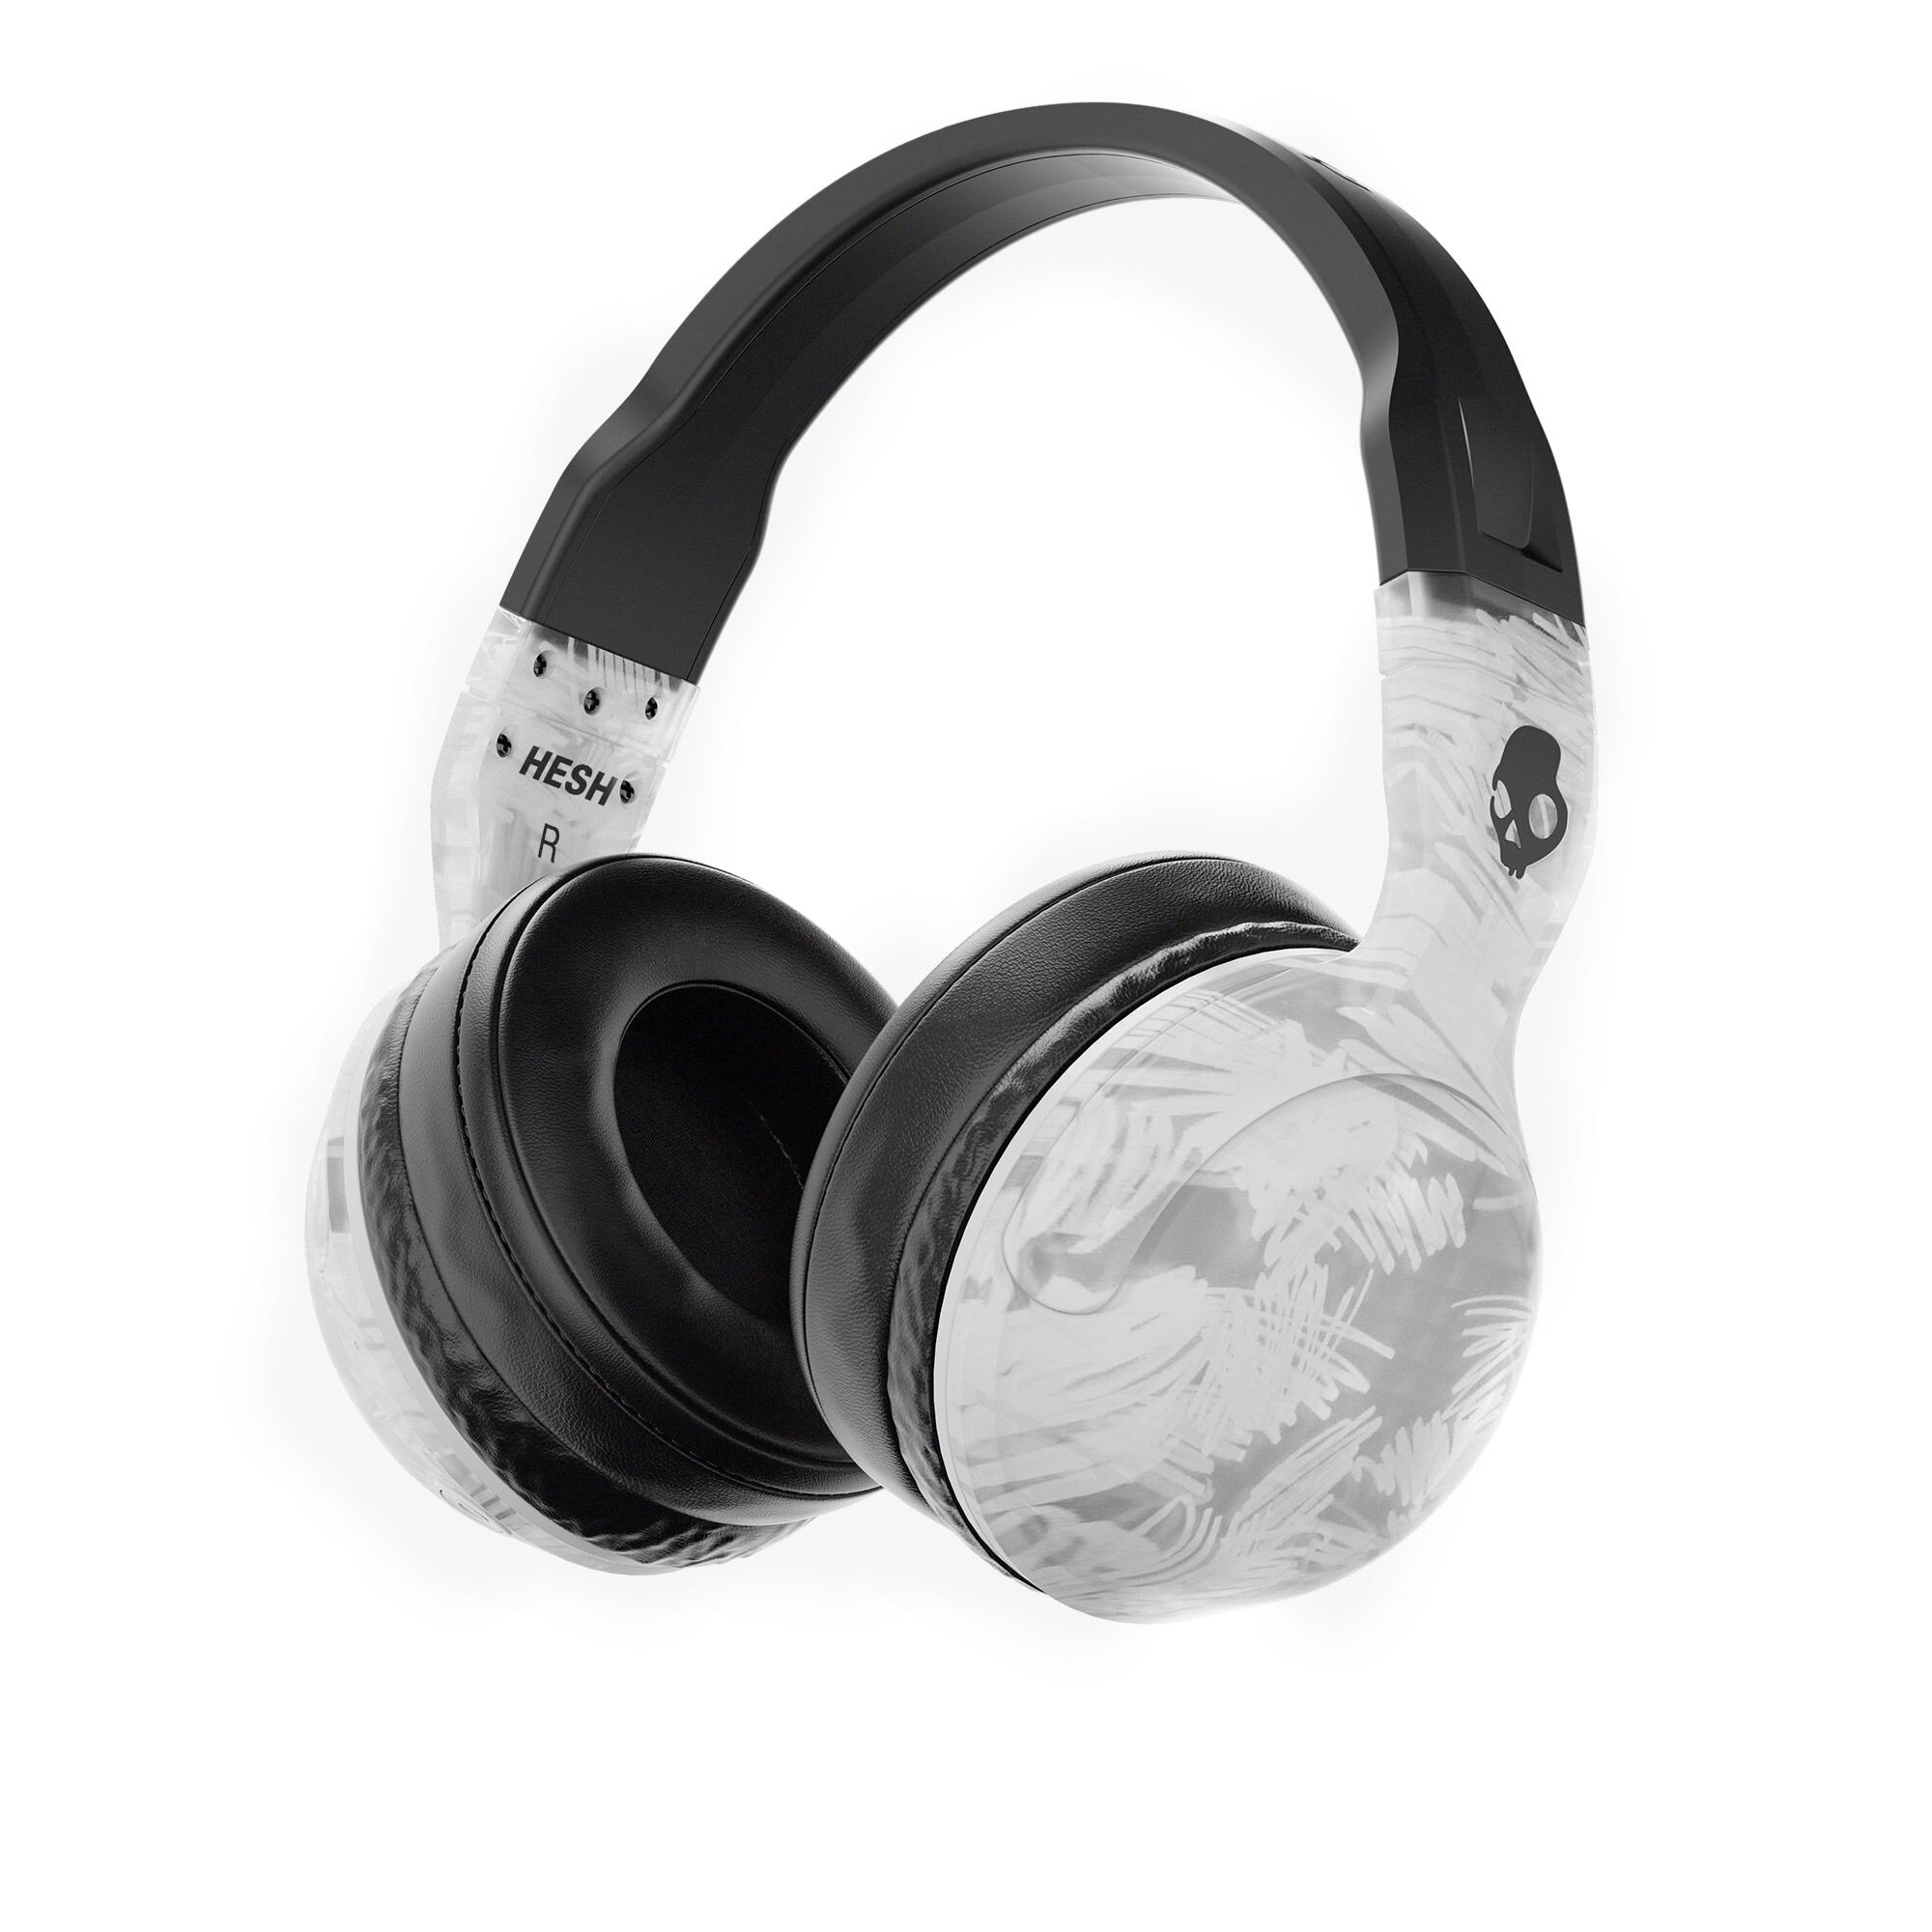 syndrom glide Forbløffe Buy Skullcandy Hesh 2 Wireless Over-Ear Headphones - Clear/Scribble online  Worldwide - Tejar.com